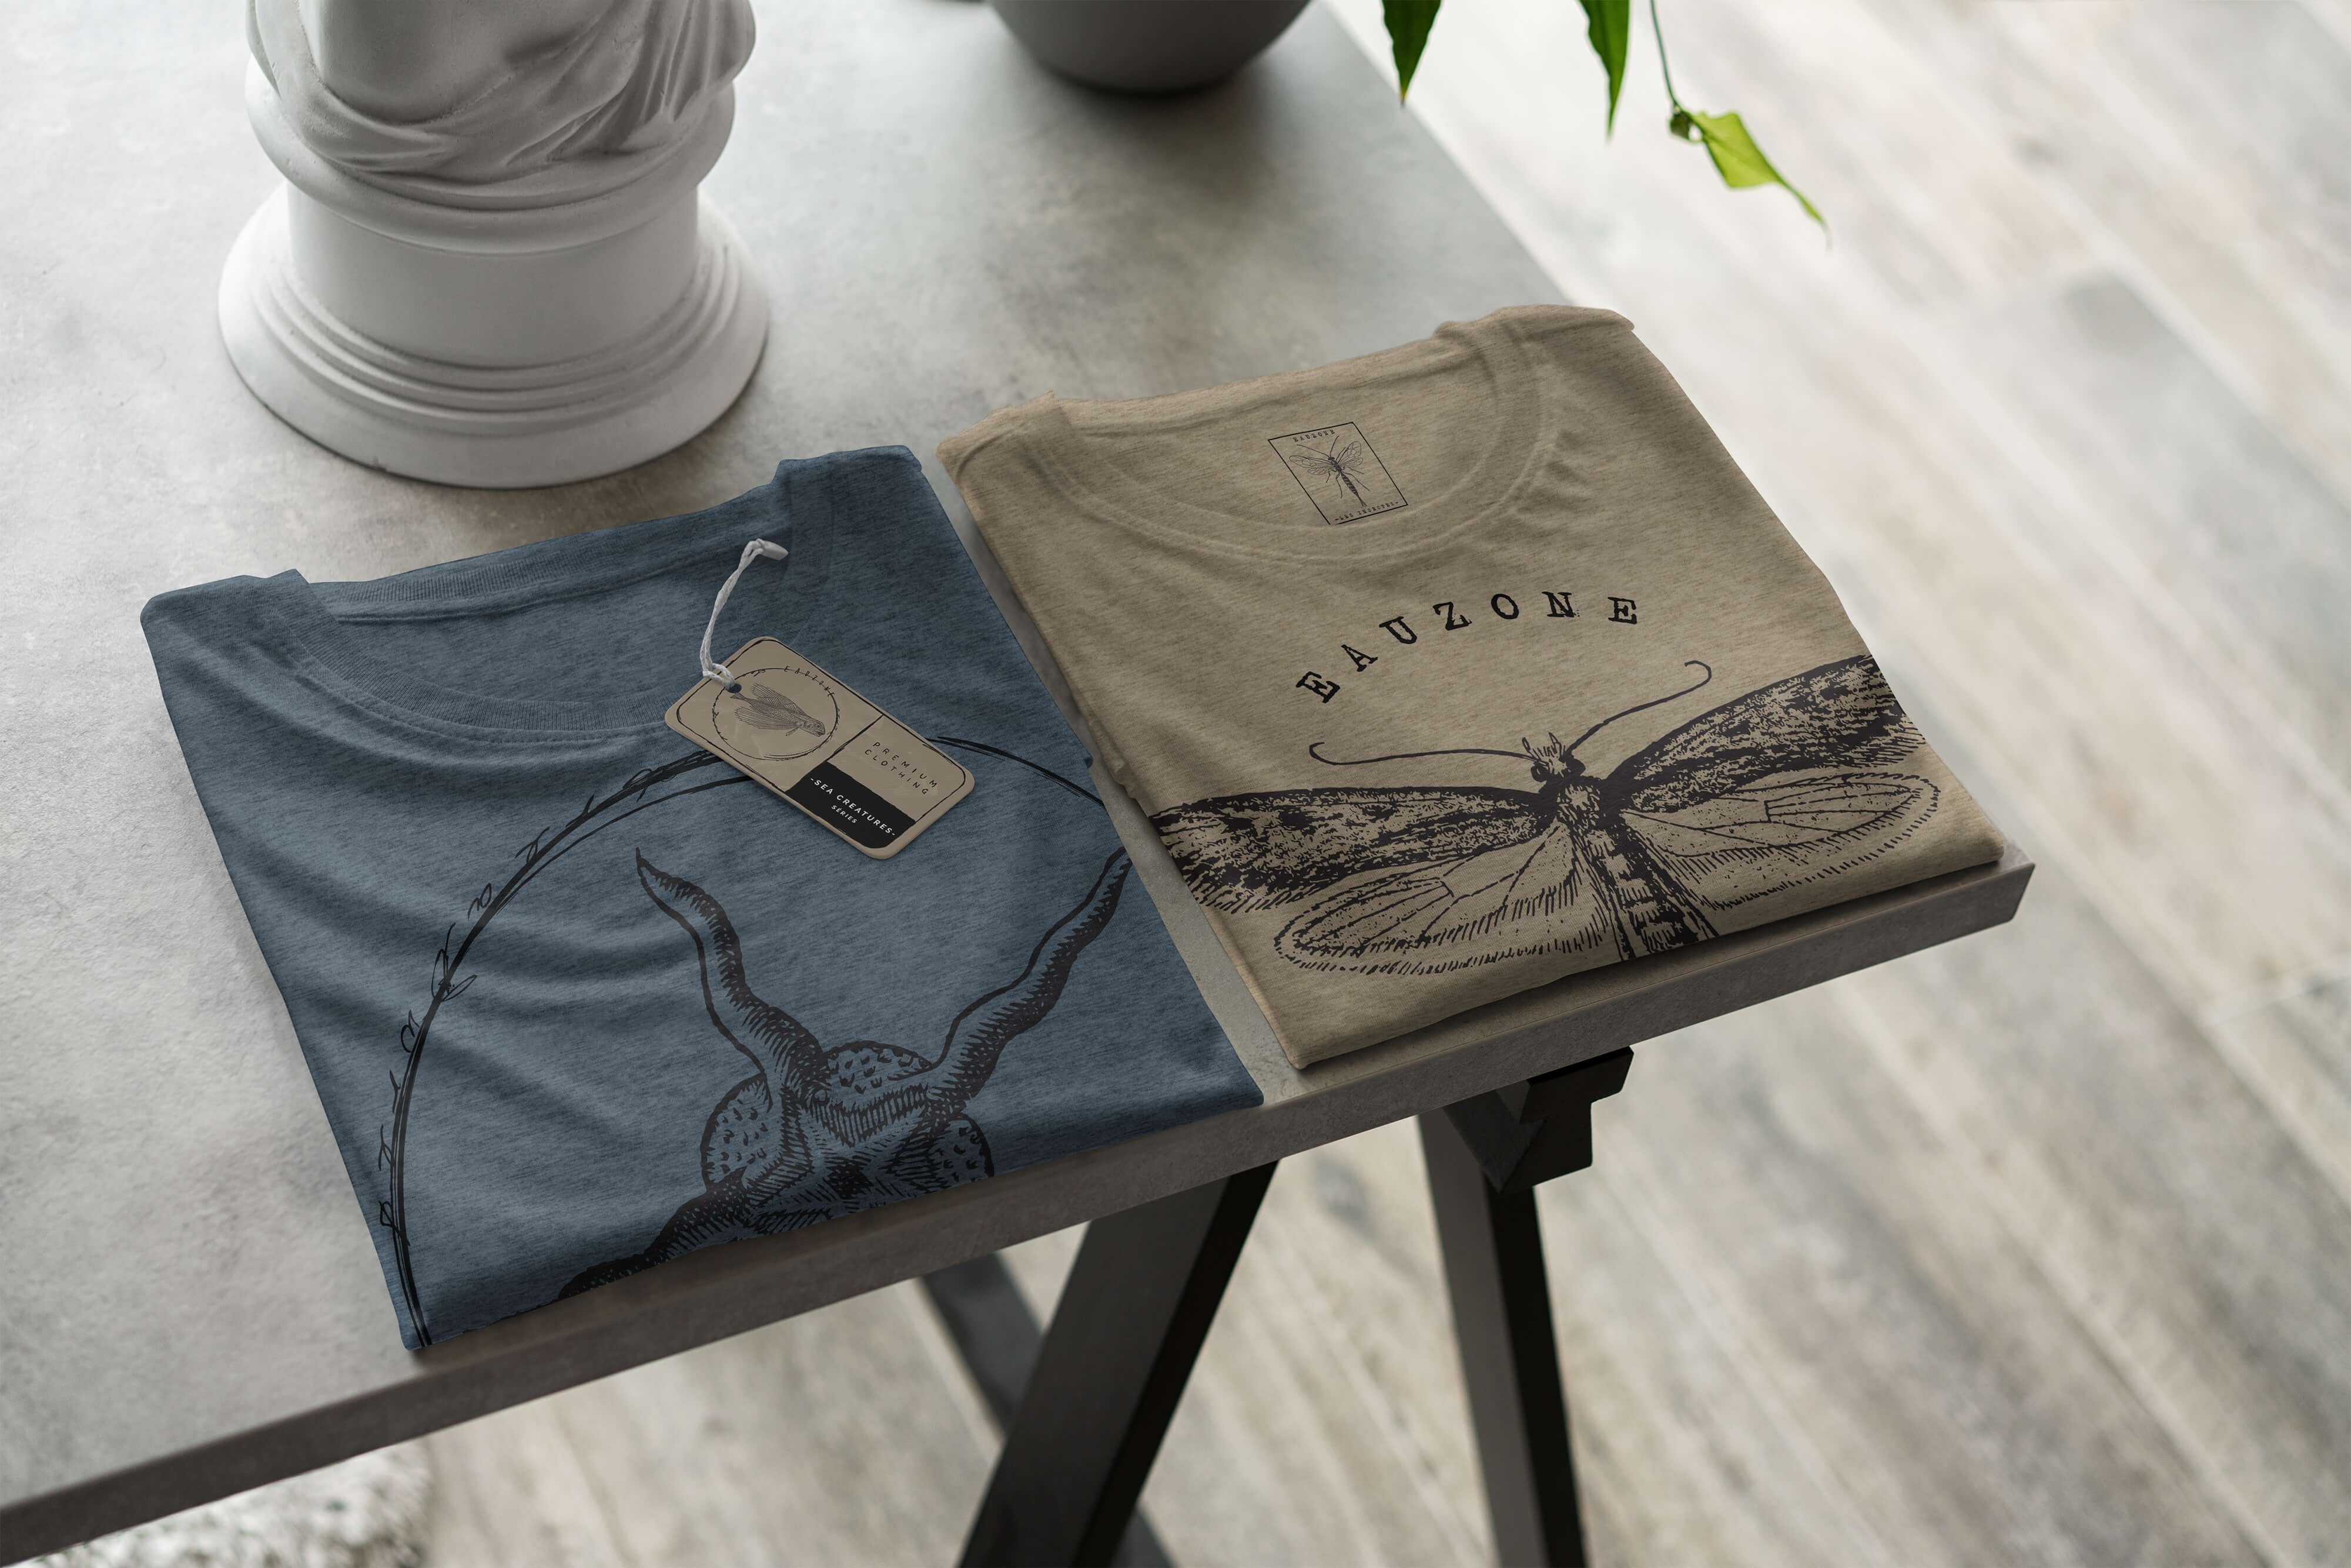 Sea Sea Tiefsee T-Shirt Fische - Indigo feine und Art Serie: 019 T-Shirt sportlicher Struktur Creatures, Sinus / Schnitt